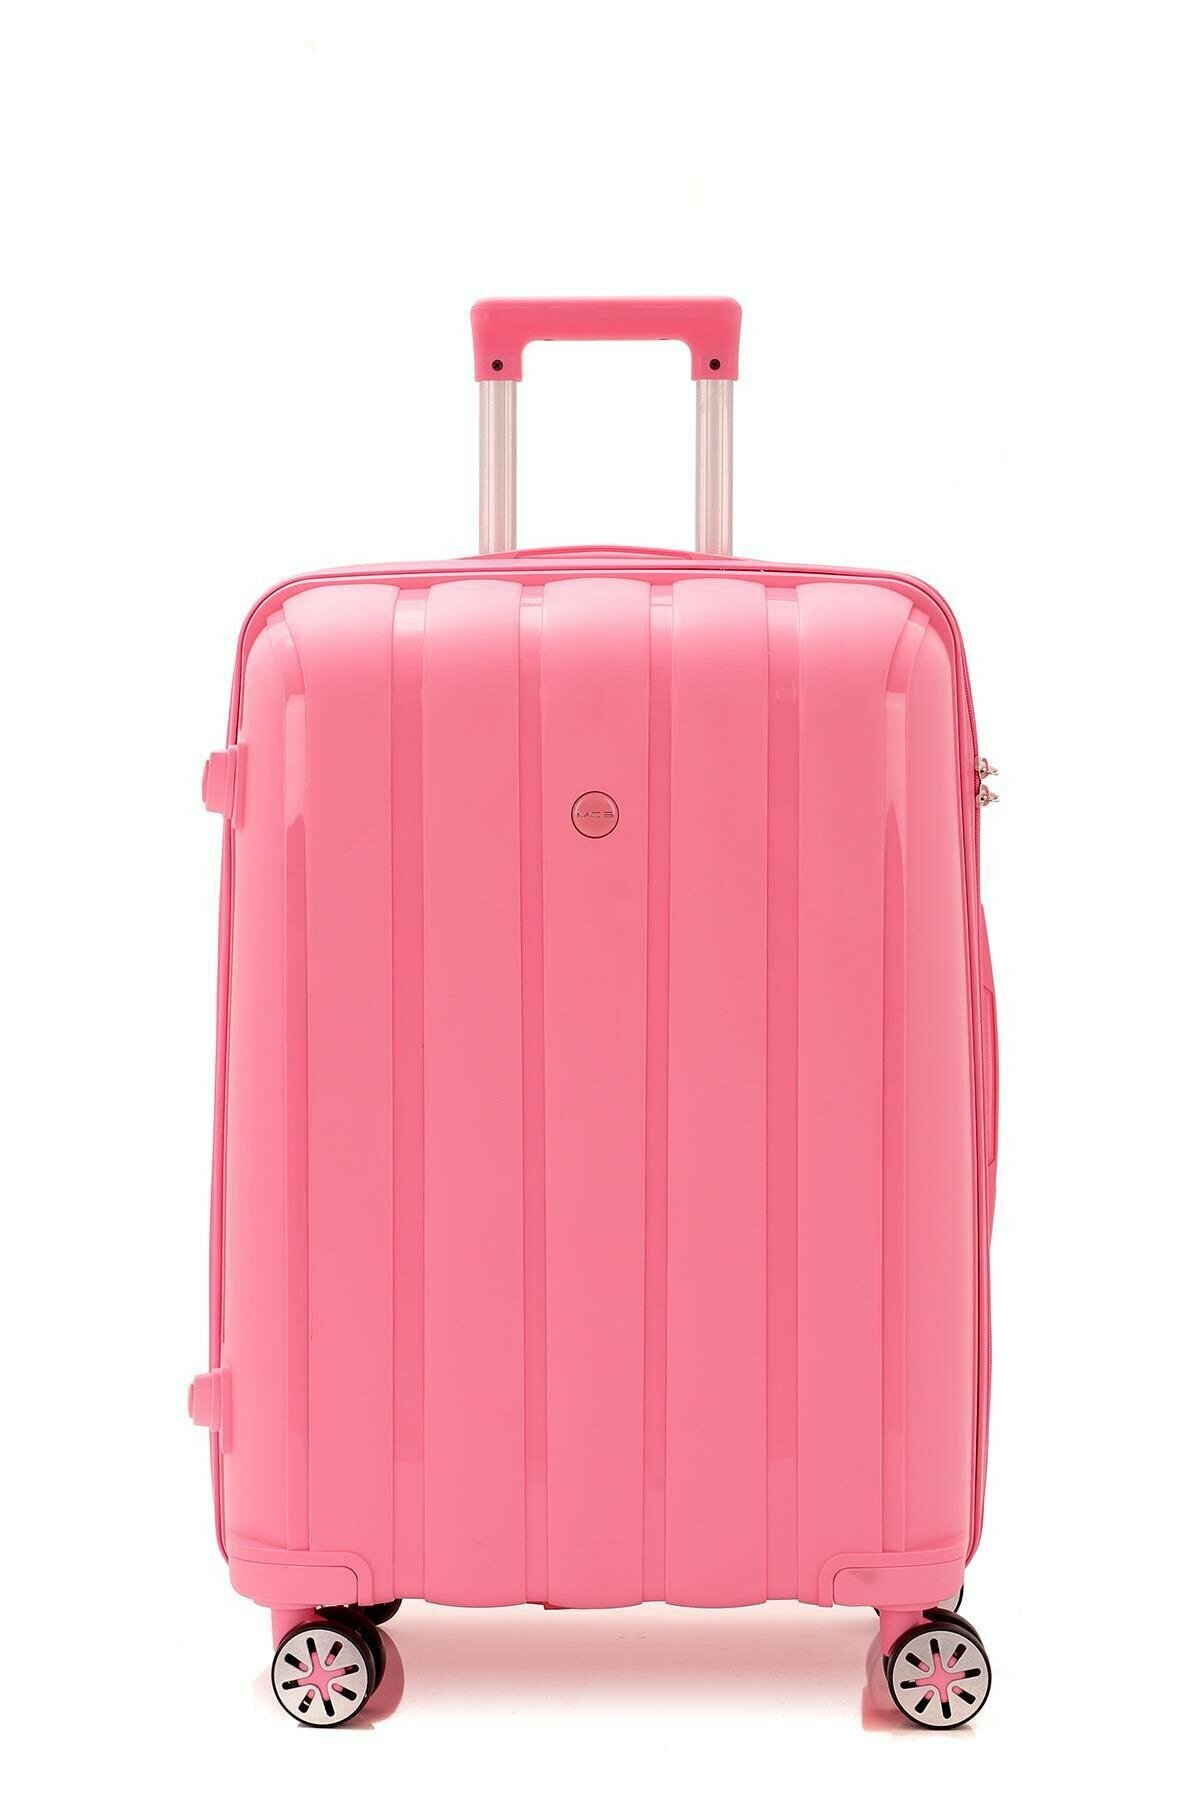 Маленький чемодан для ручьной клади из полипропилена MCS V305 S PINK! Для 8-10 кг!